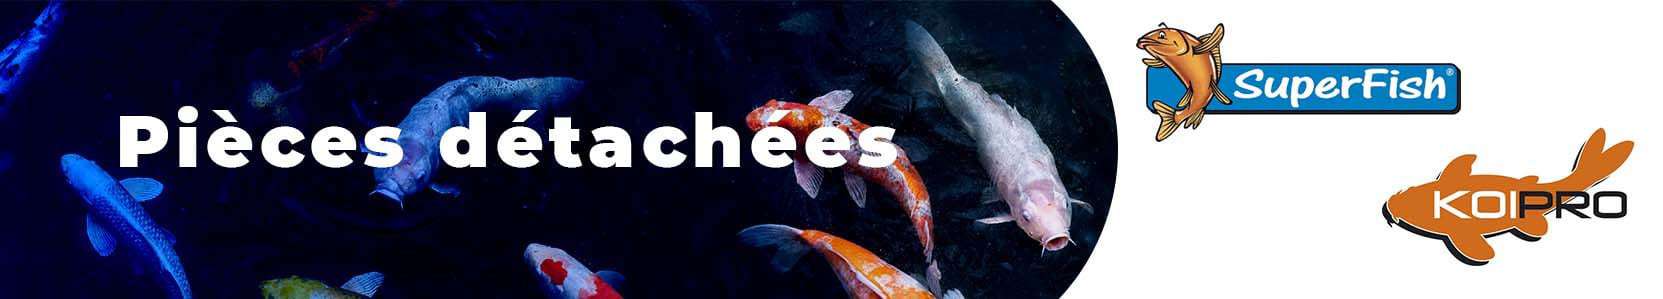 Pièces détachées SuperFish et Koi Pro pour jardin aquatique